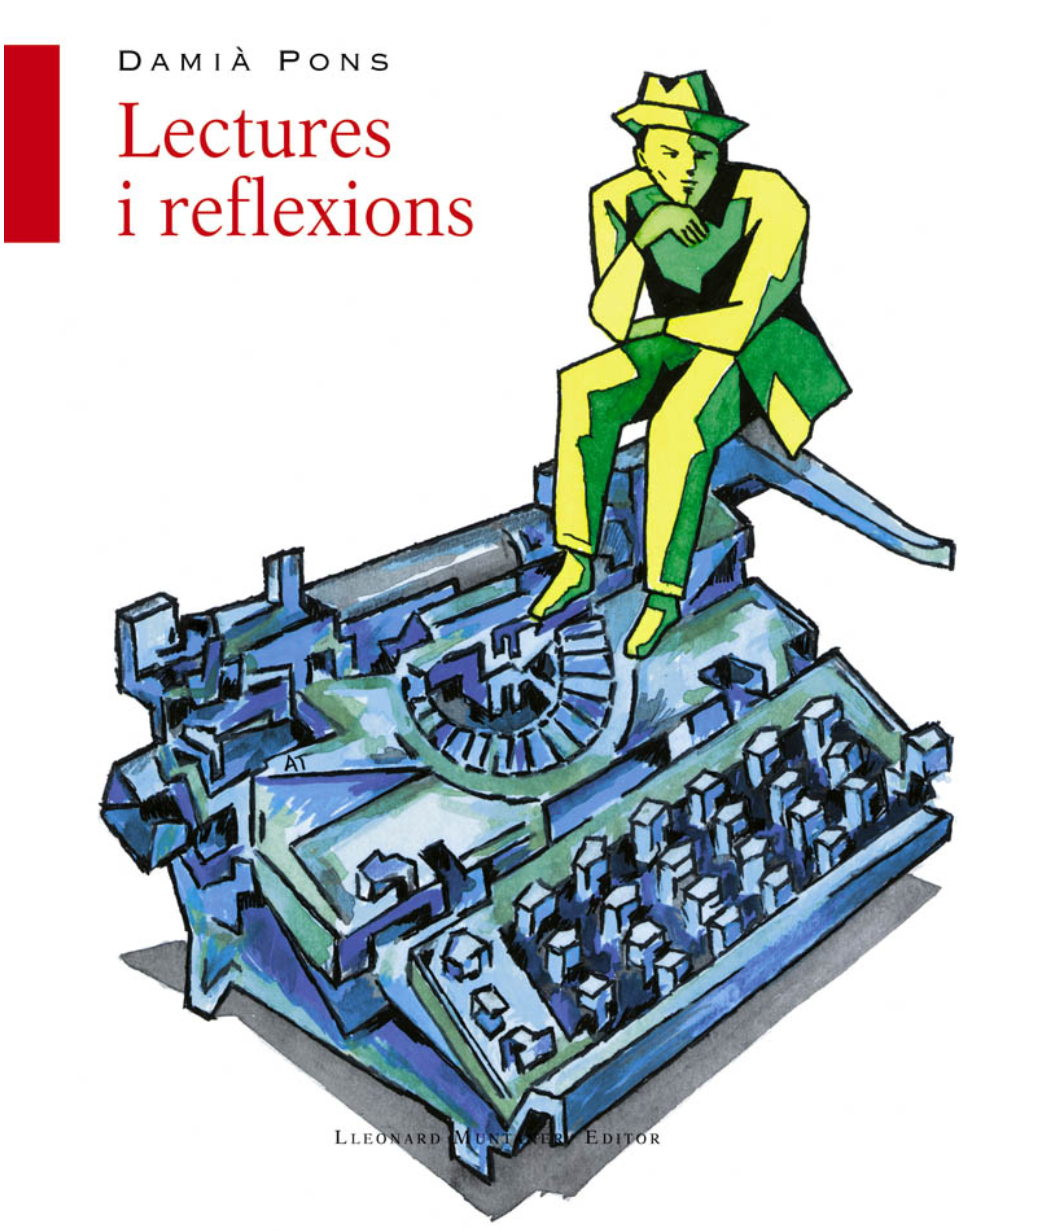 Imagen de portada del libro Lectures i reflexions